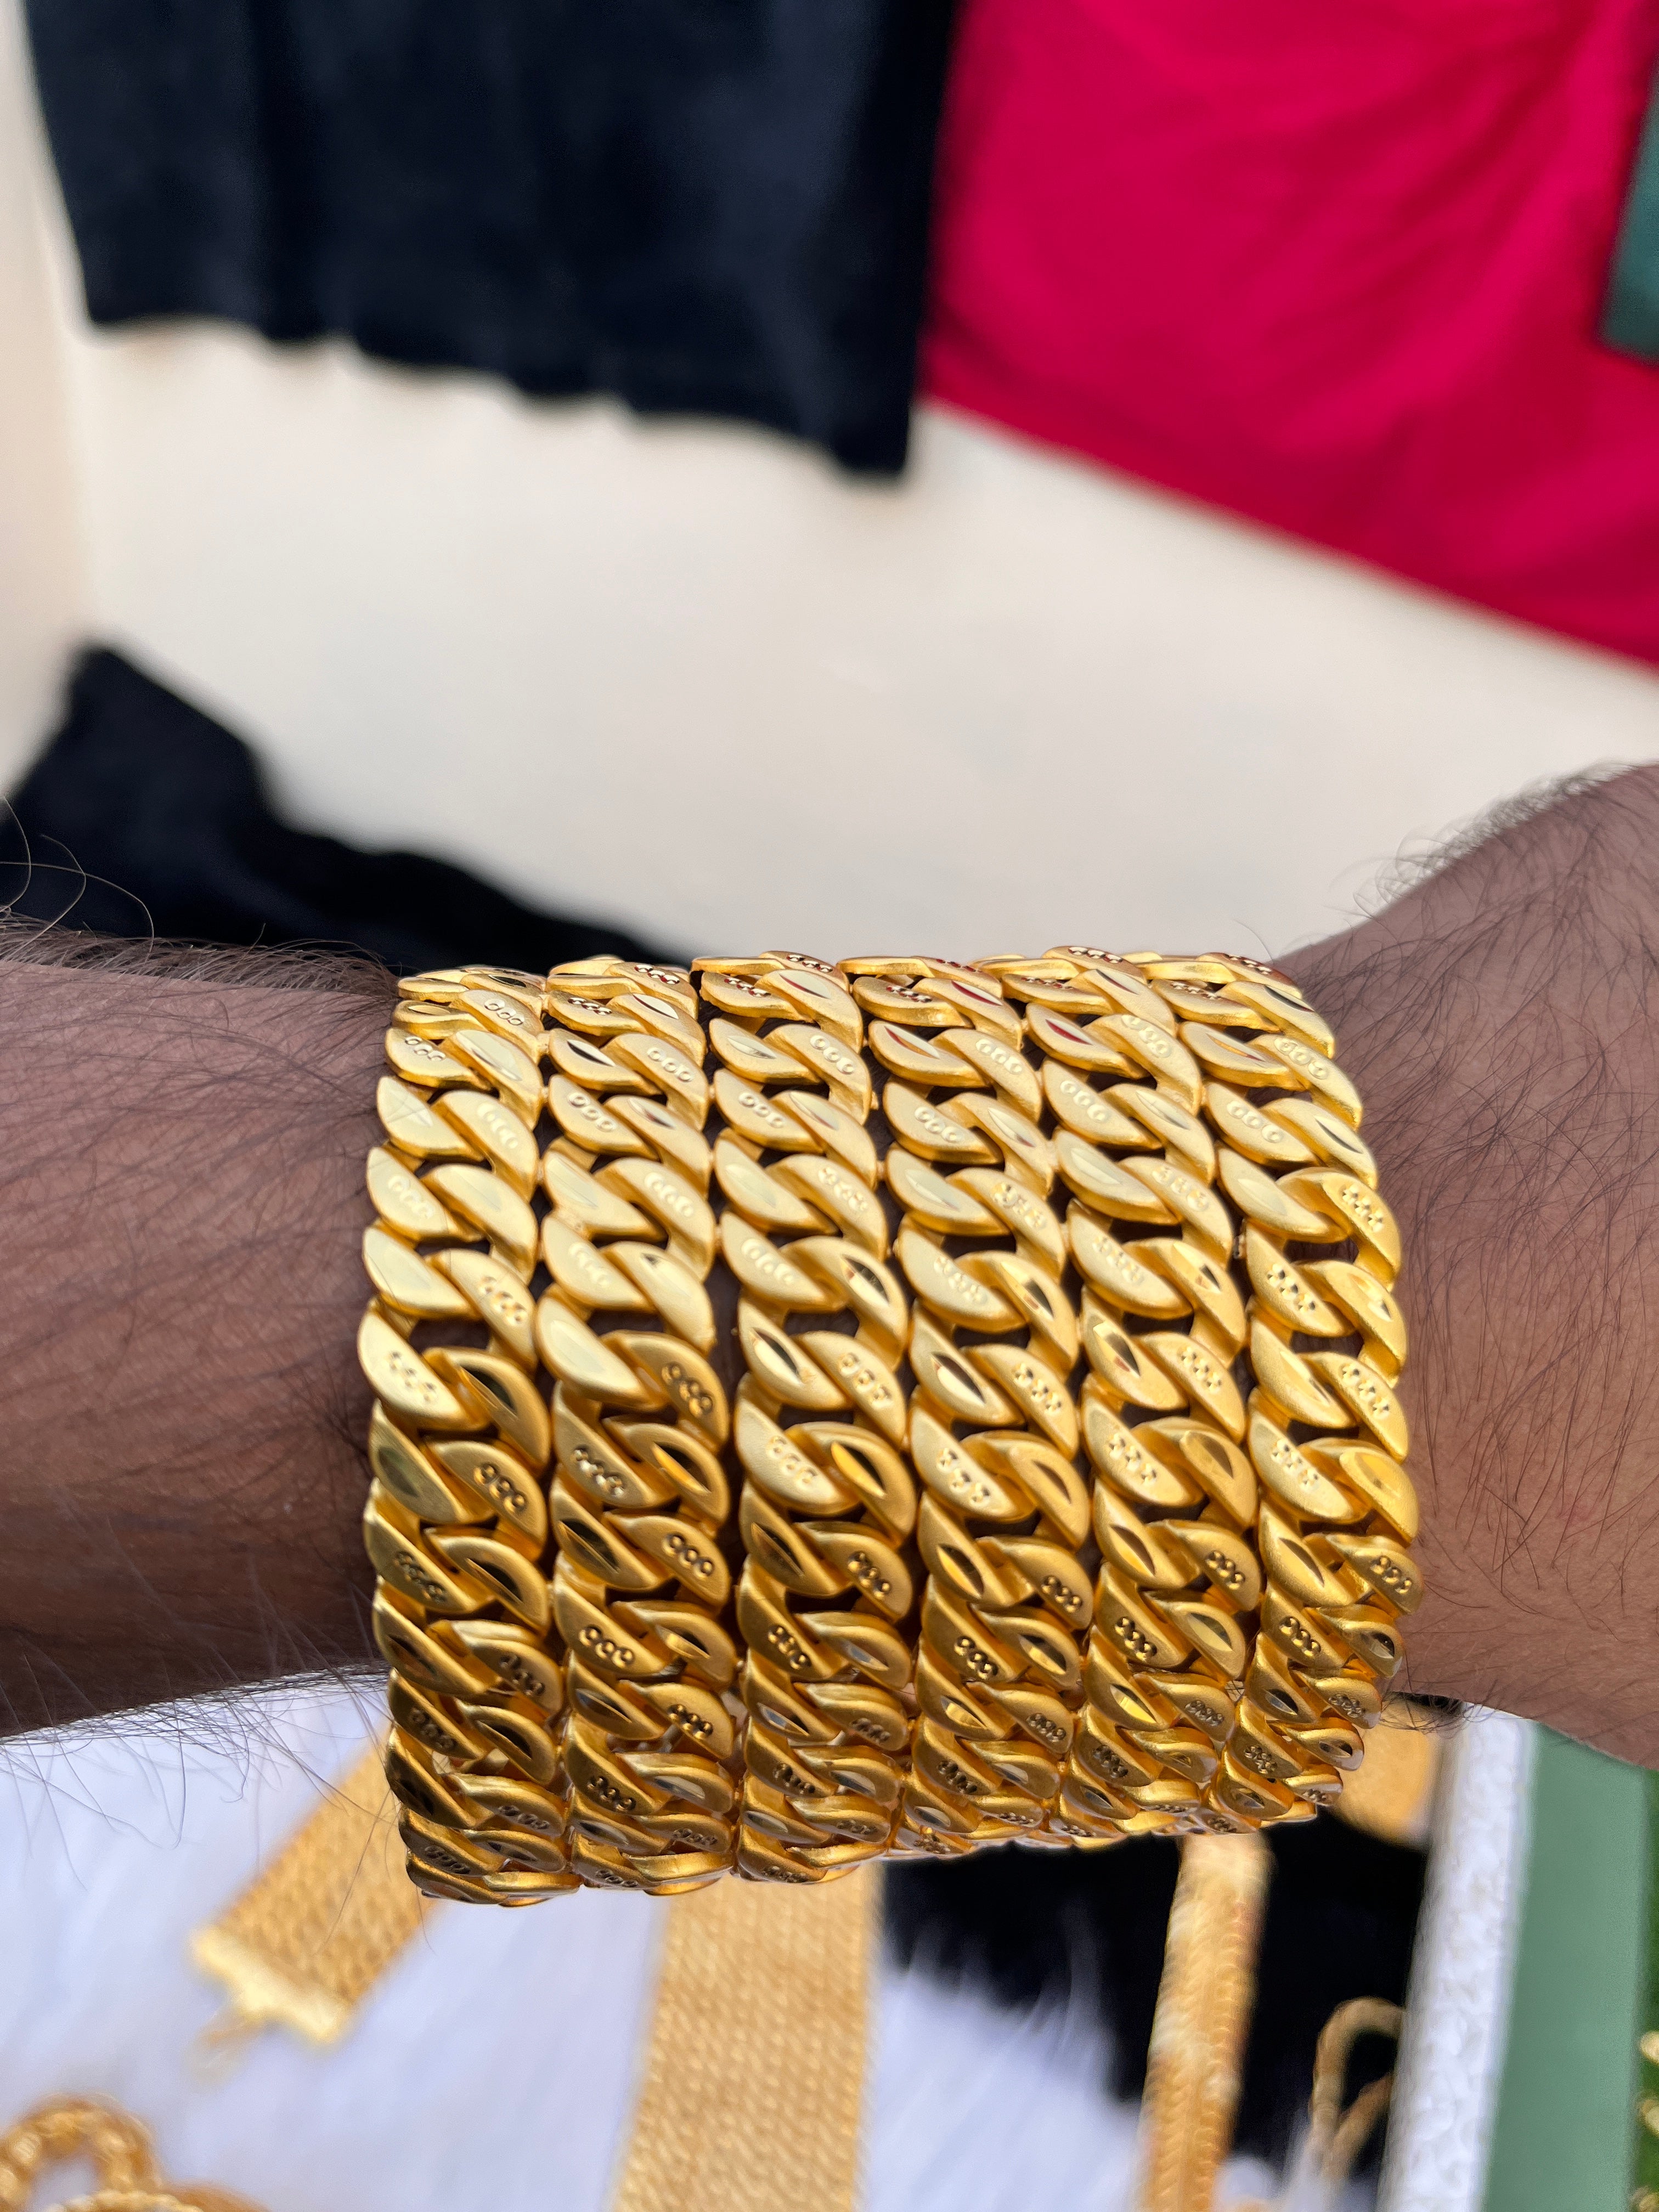 18 K Men Gold Bracelets, 17 G at Rs 134200 in Surat | ID: 5882048662